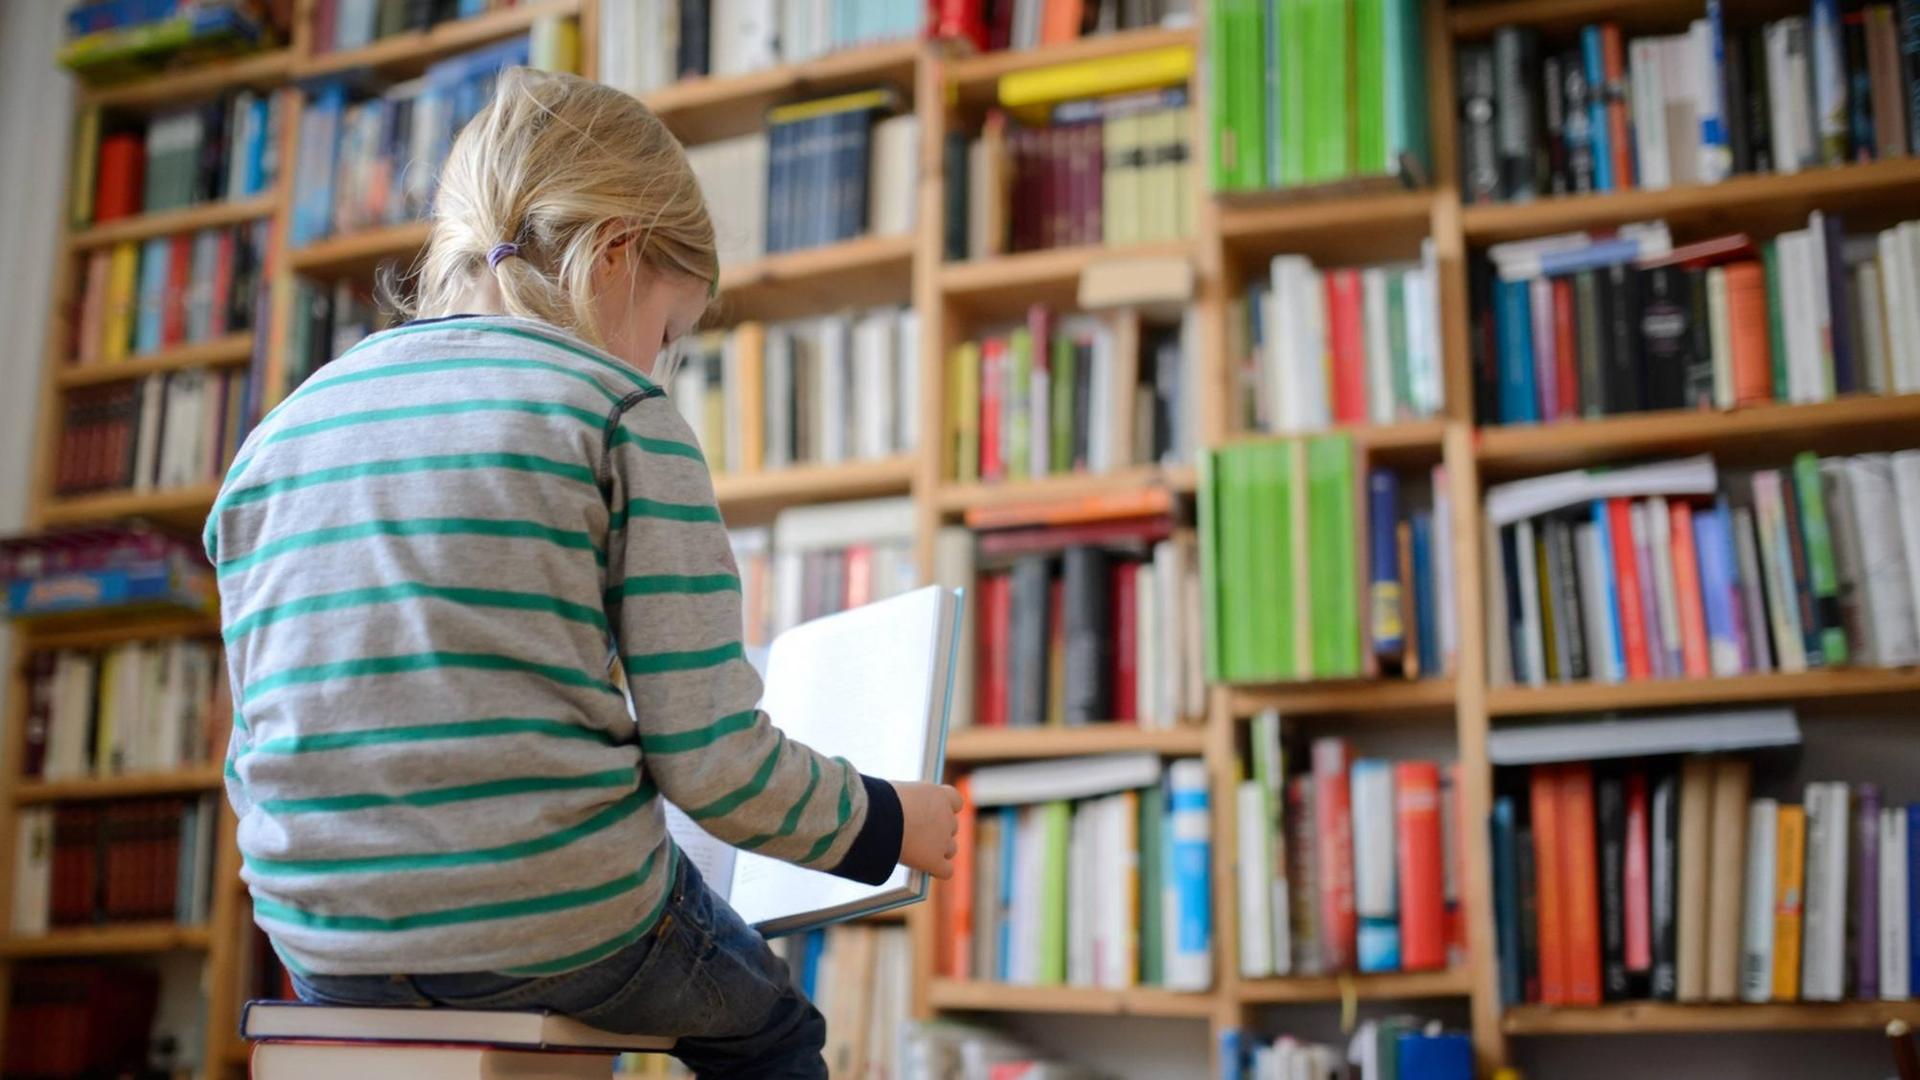 Ein Kind sitzt auf einem Buchstapel vor einem Bücherregal und liest ein Buch.